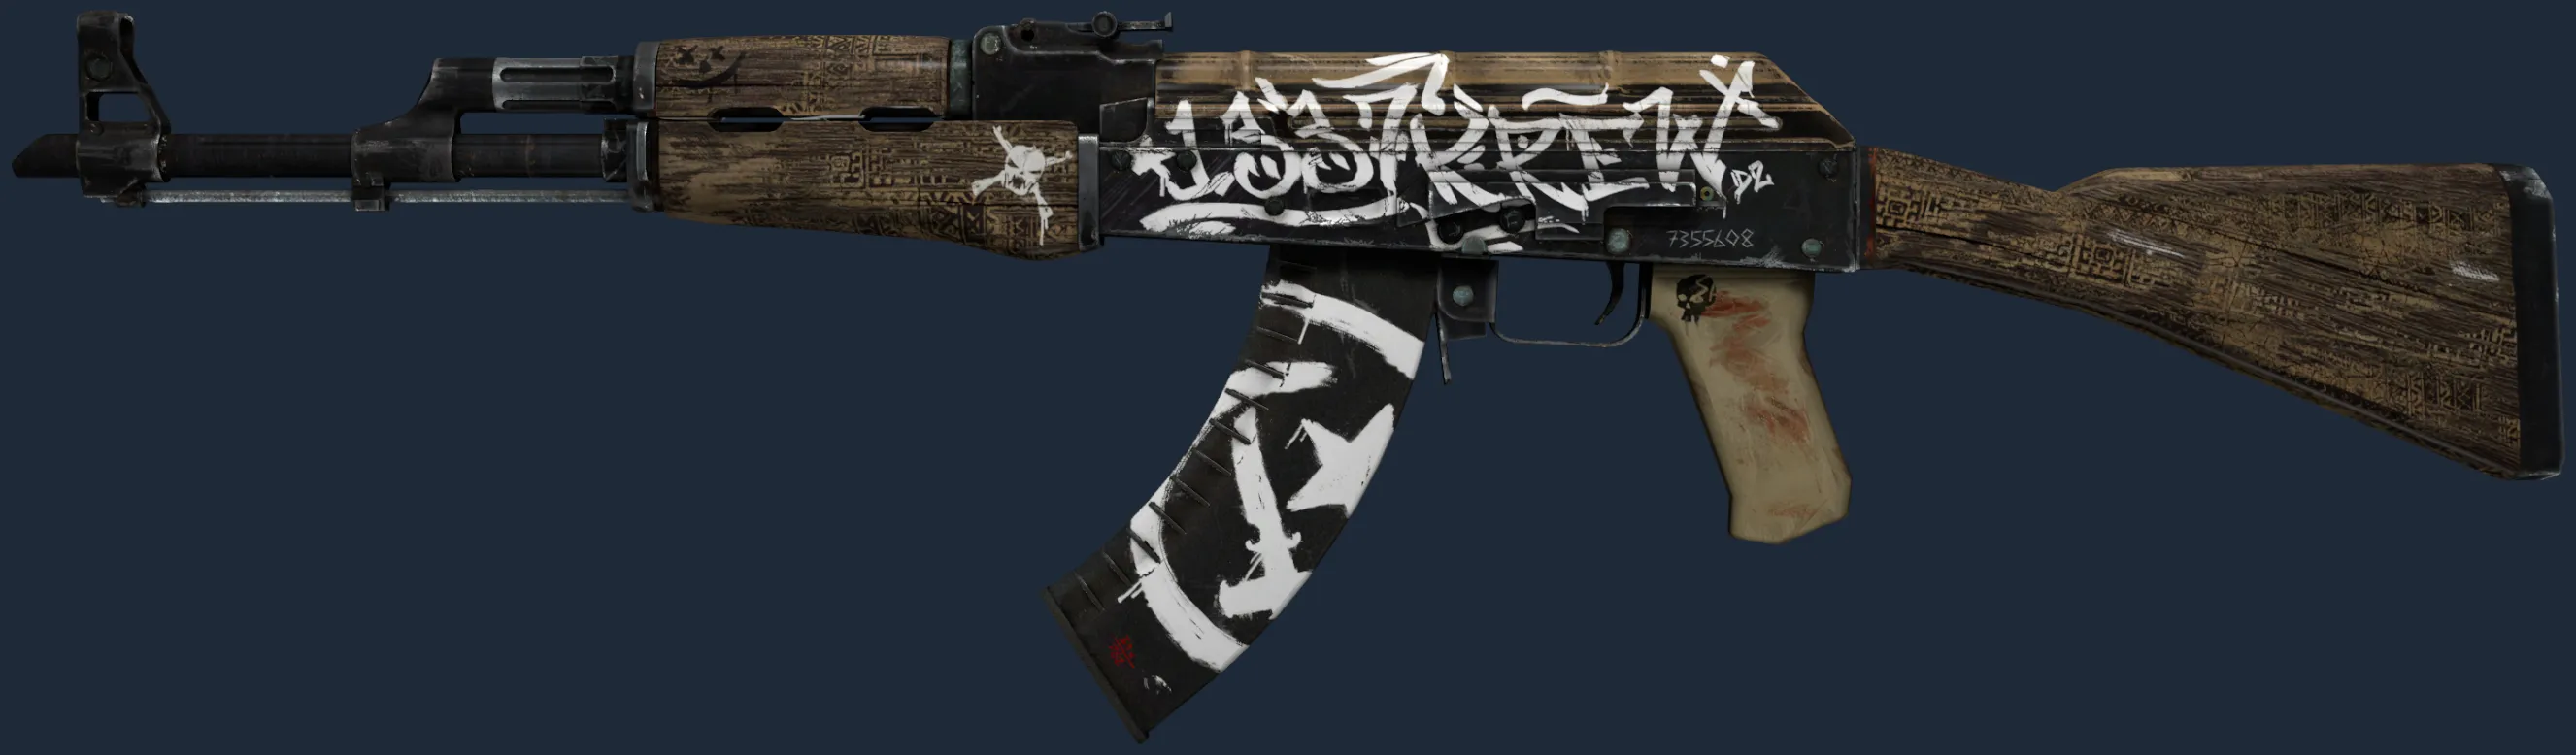 AK-47 | Wasteland Rebel (Factory New)